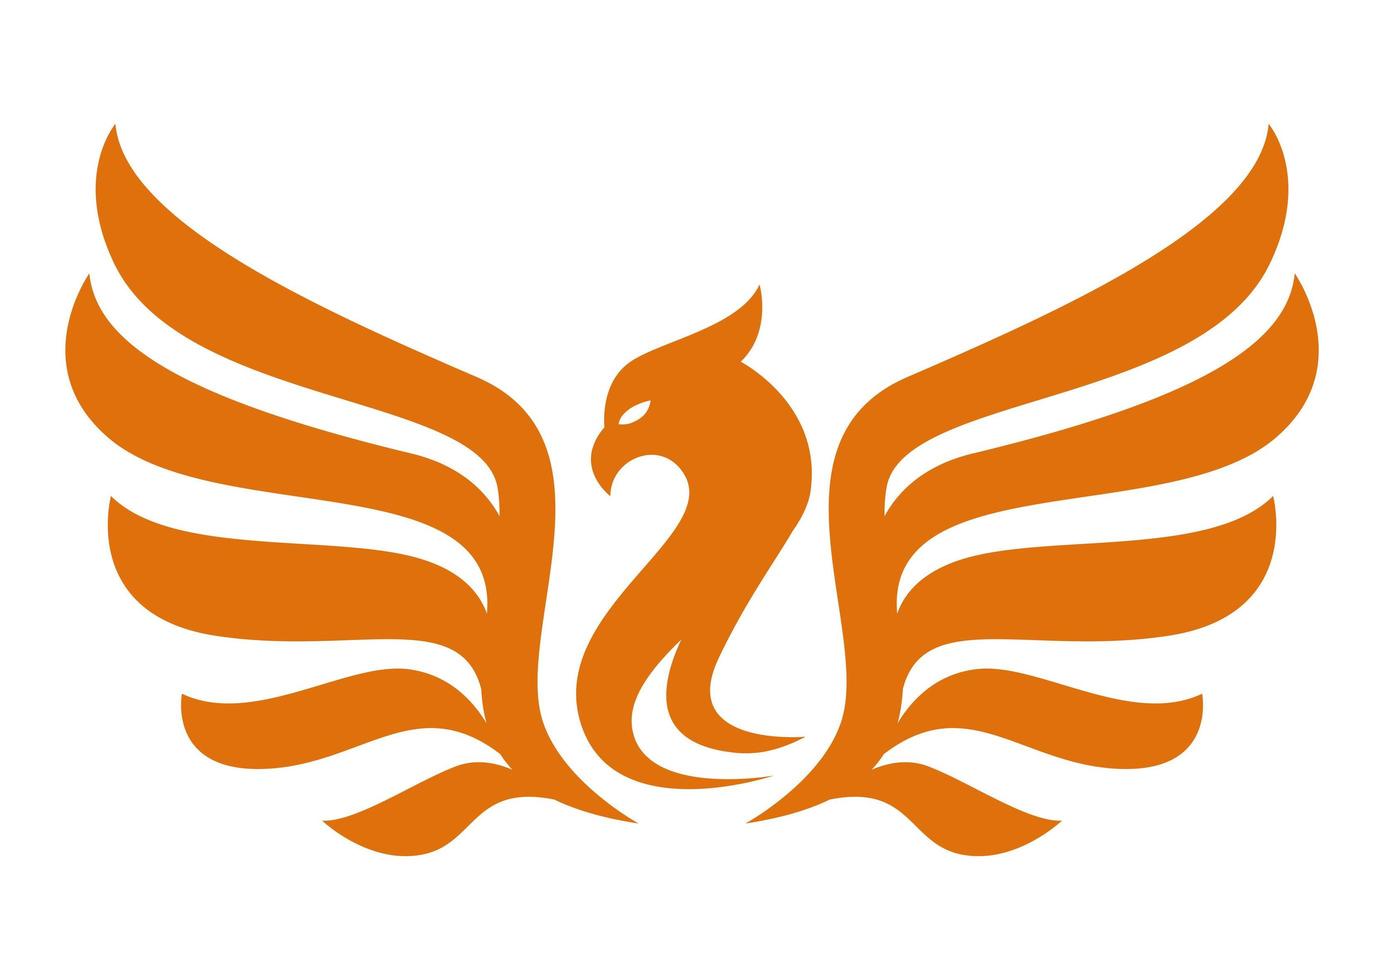 silueta de emblema de ave fénix vector